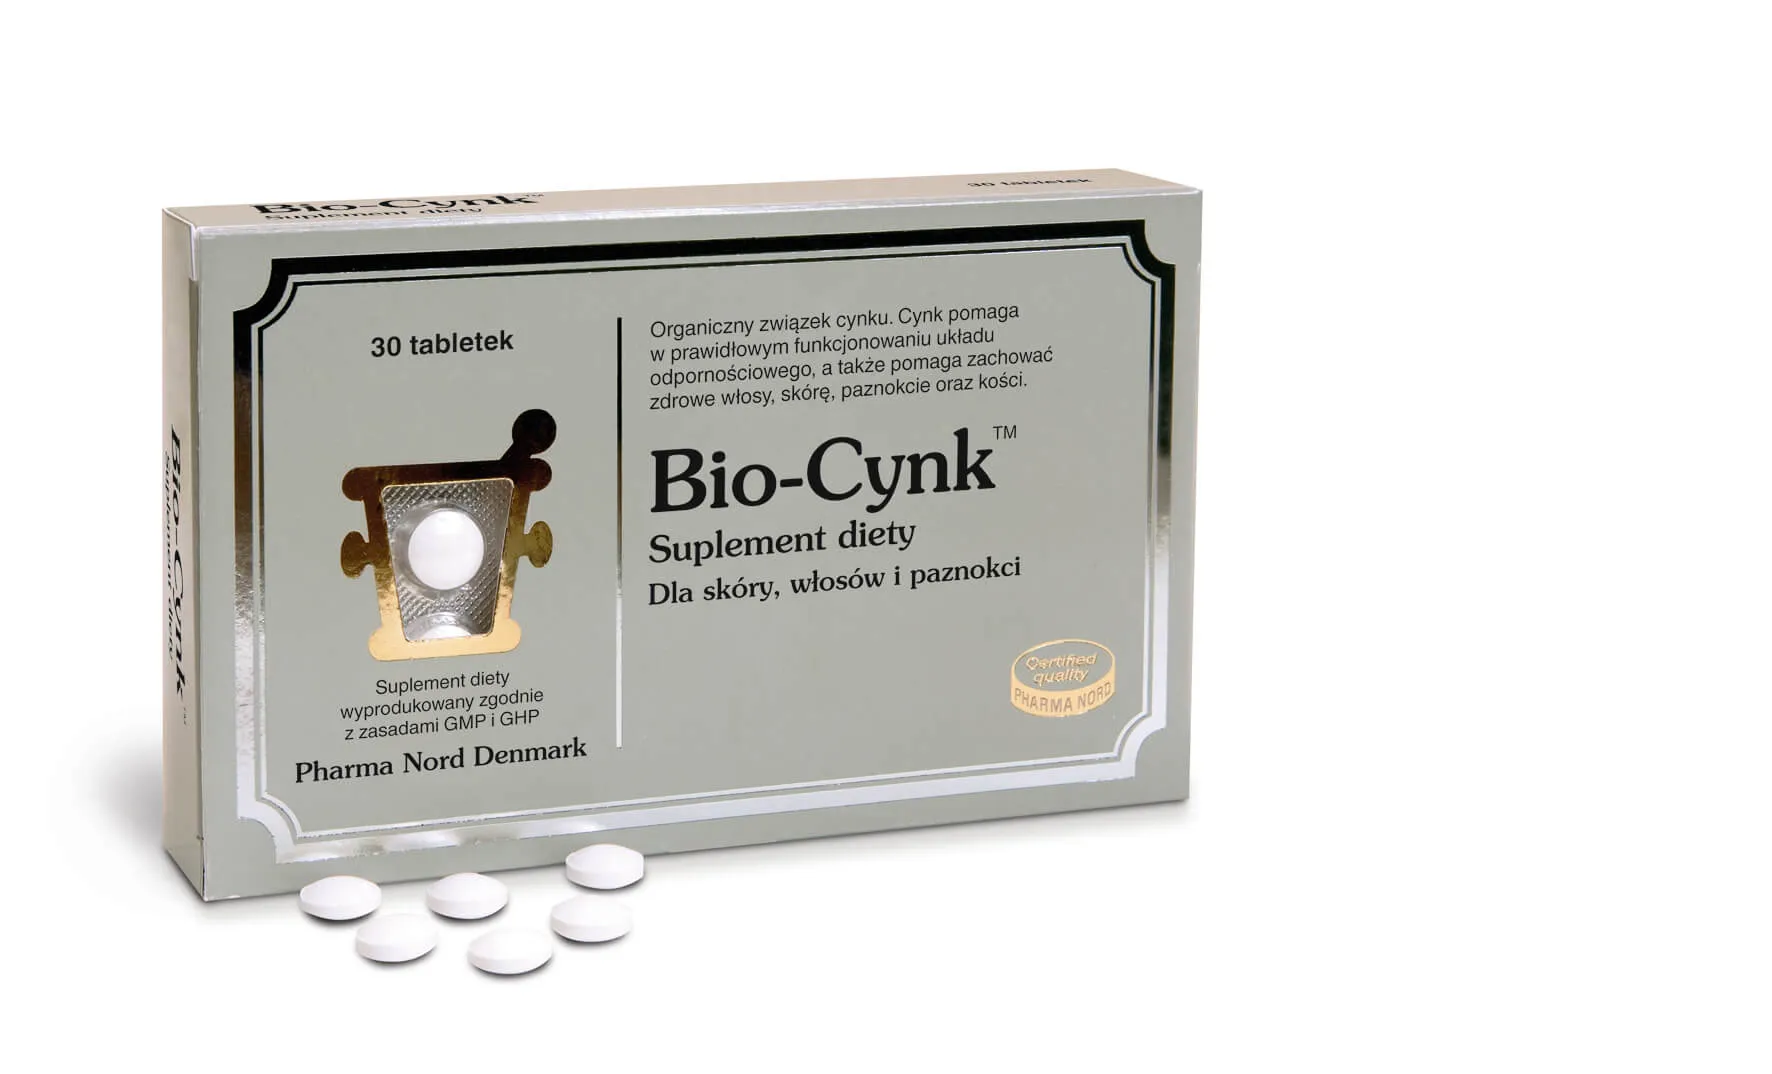 Bio-Cynk, suplement diety, 30 tabletek